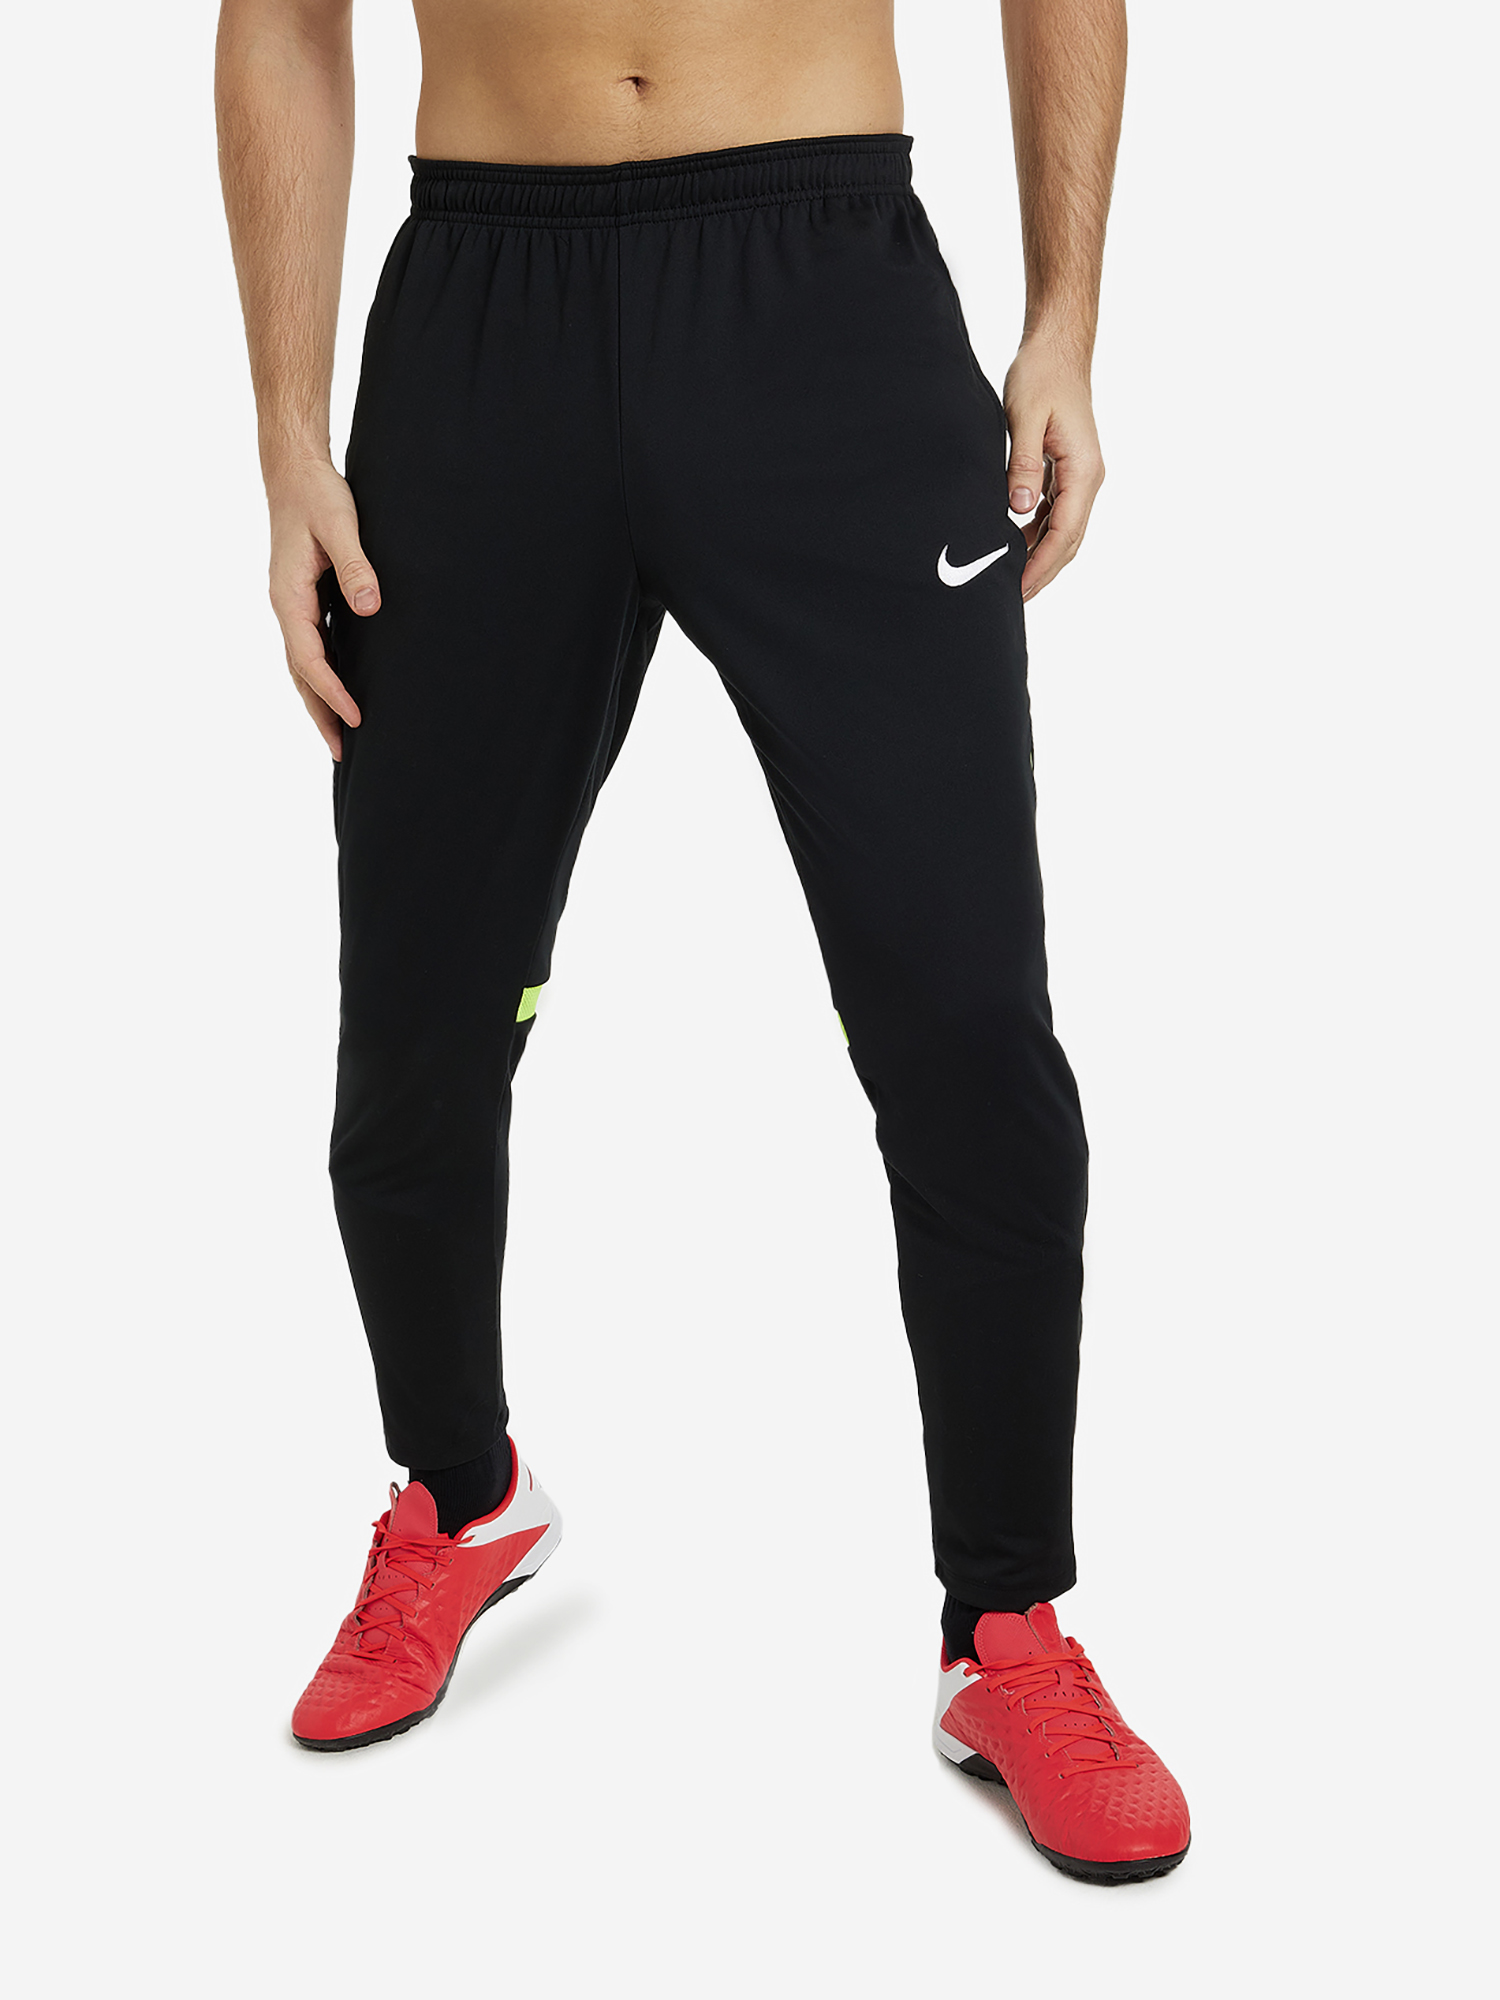 Брюки мужские Nike Training Academy Pro, Черный брюки для мальчиков nike kids training pant park 20 knit pant